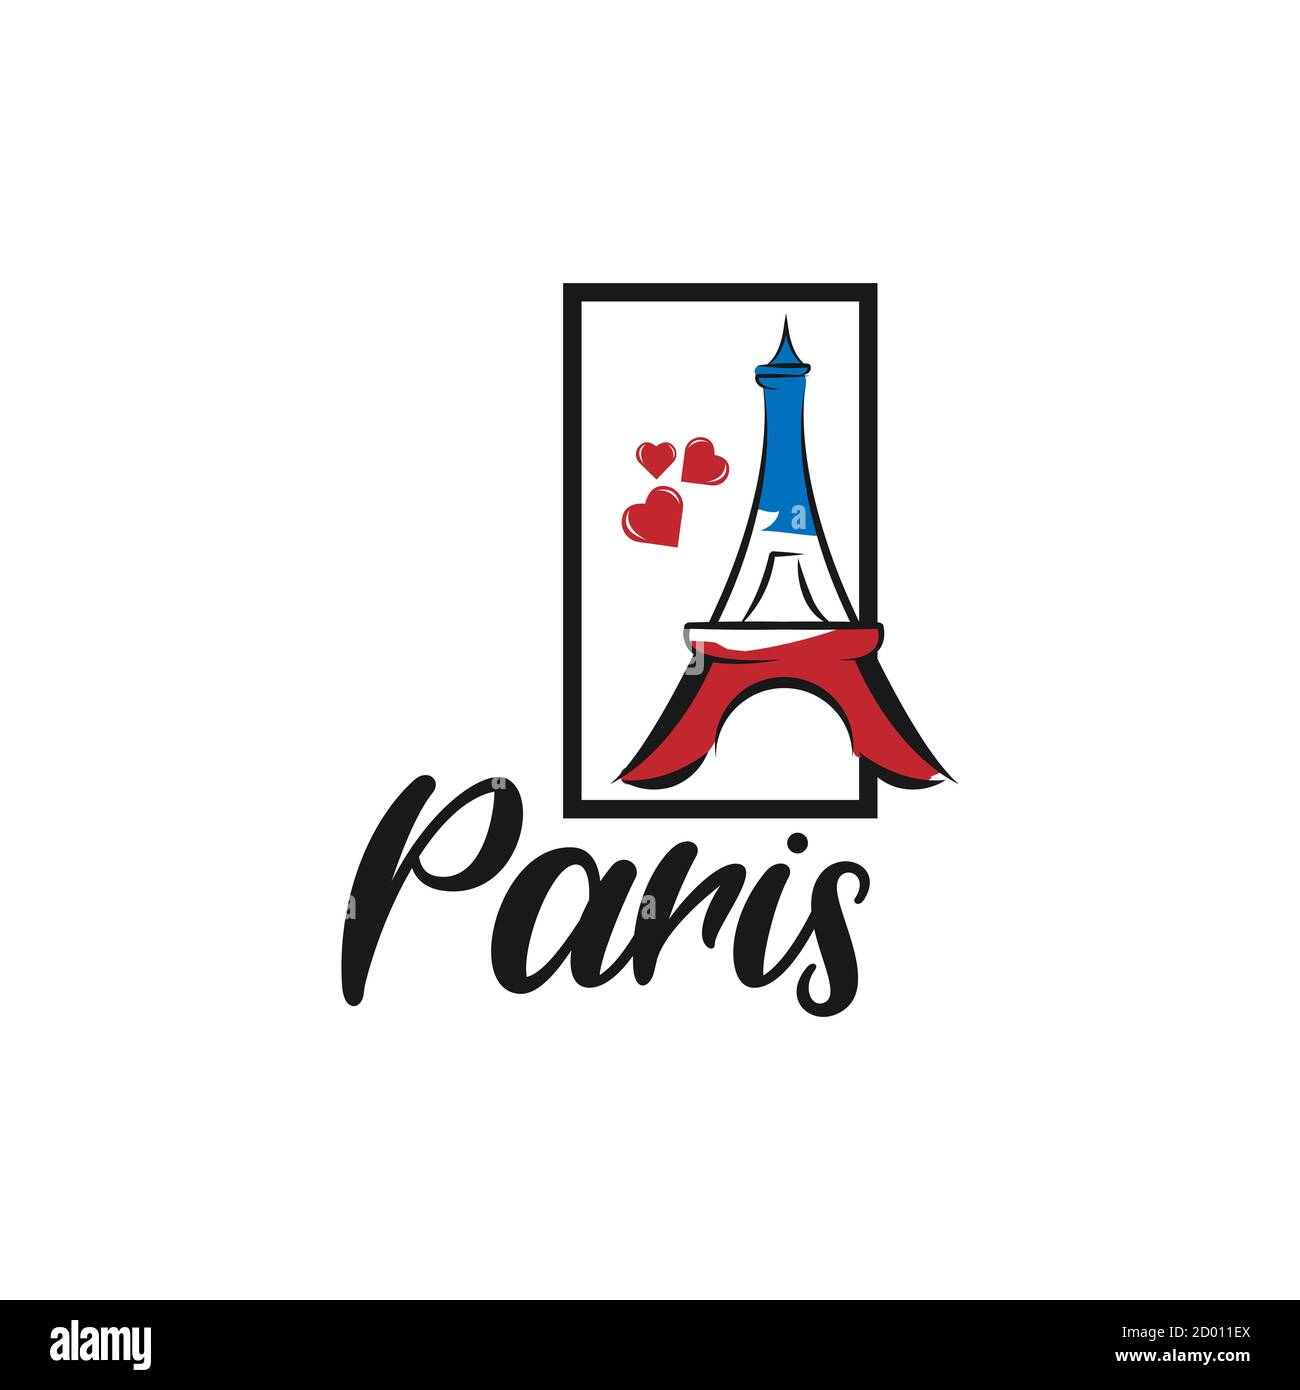 Belle typographie de texte écrit à la main de la ville européenne logo paris avec coeur rouge adapté au tourisme ou visitez la promotion Illustration de Vecteur